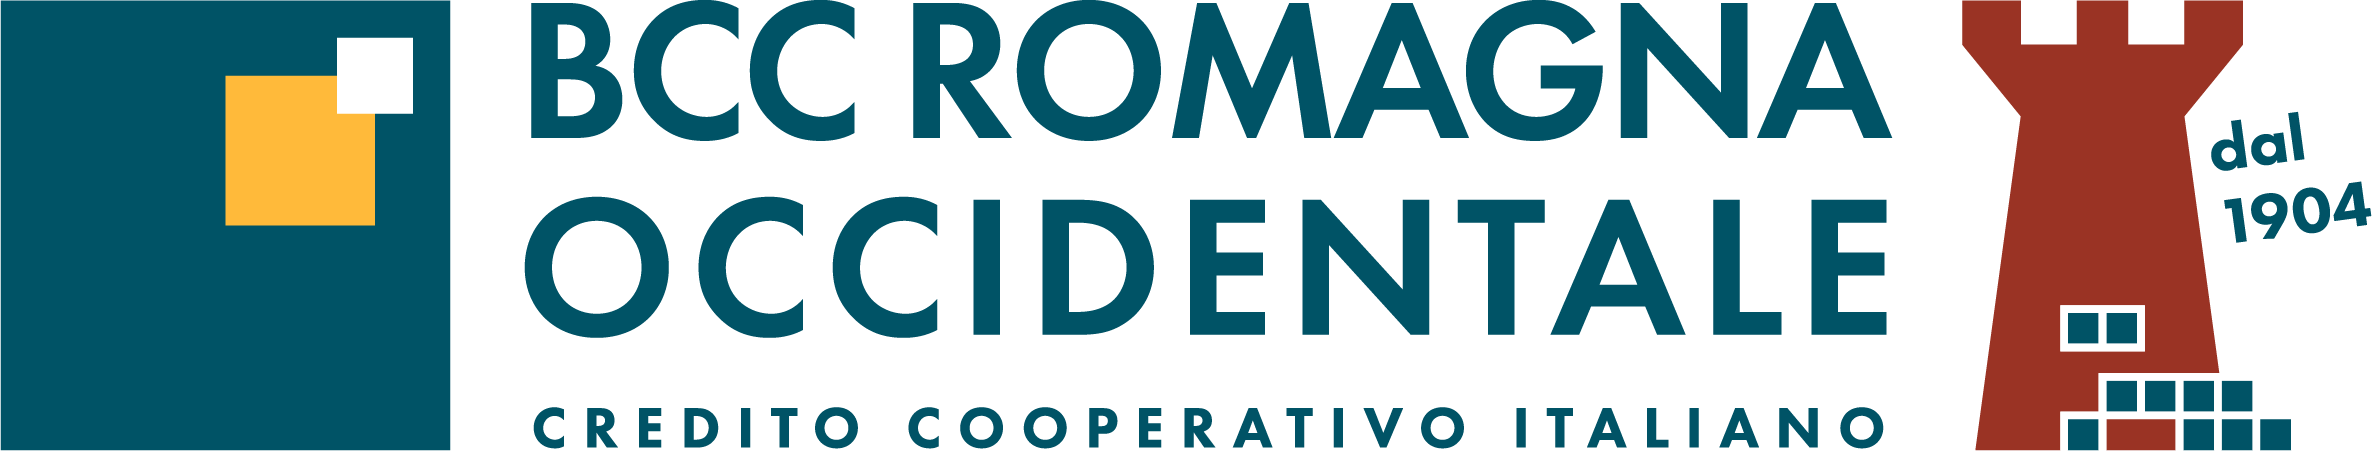 Logo BCC della Romagna Occidentale